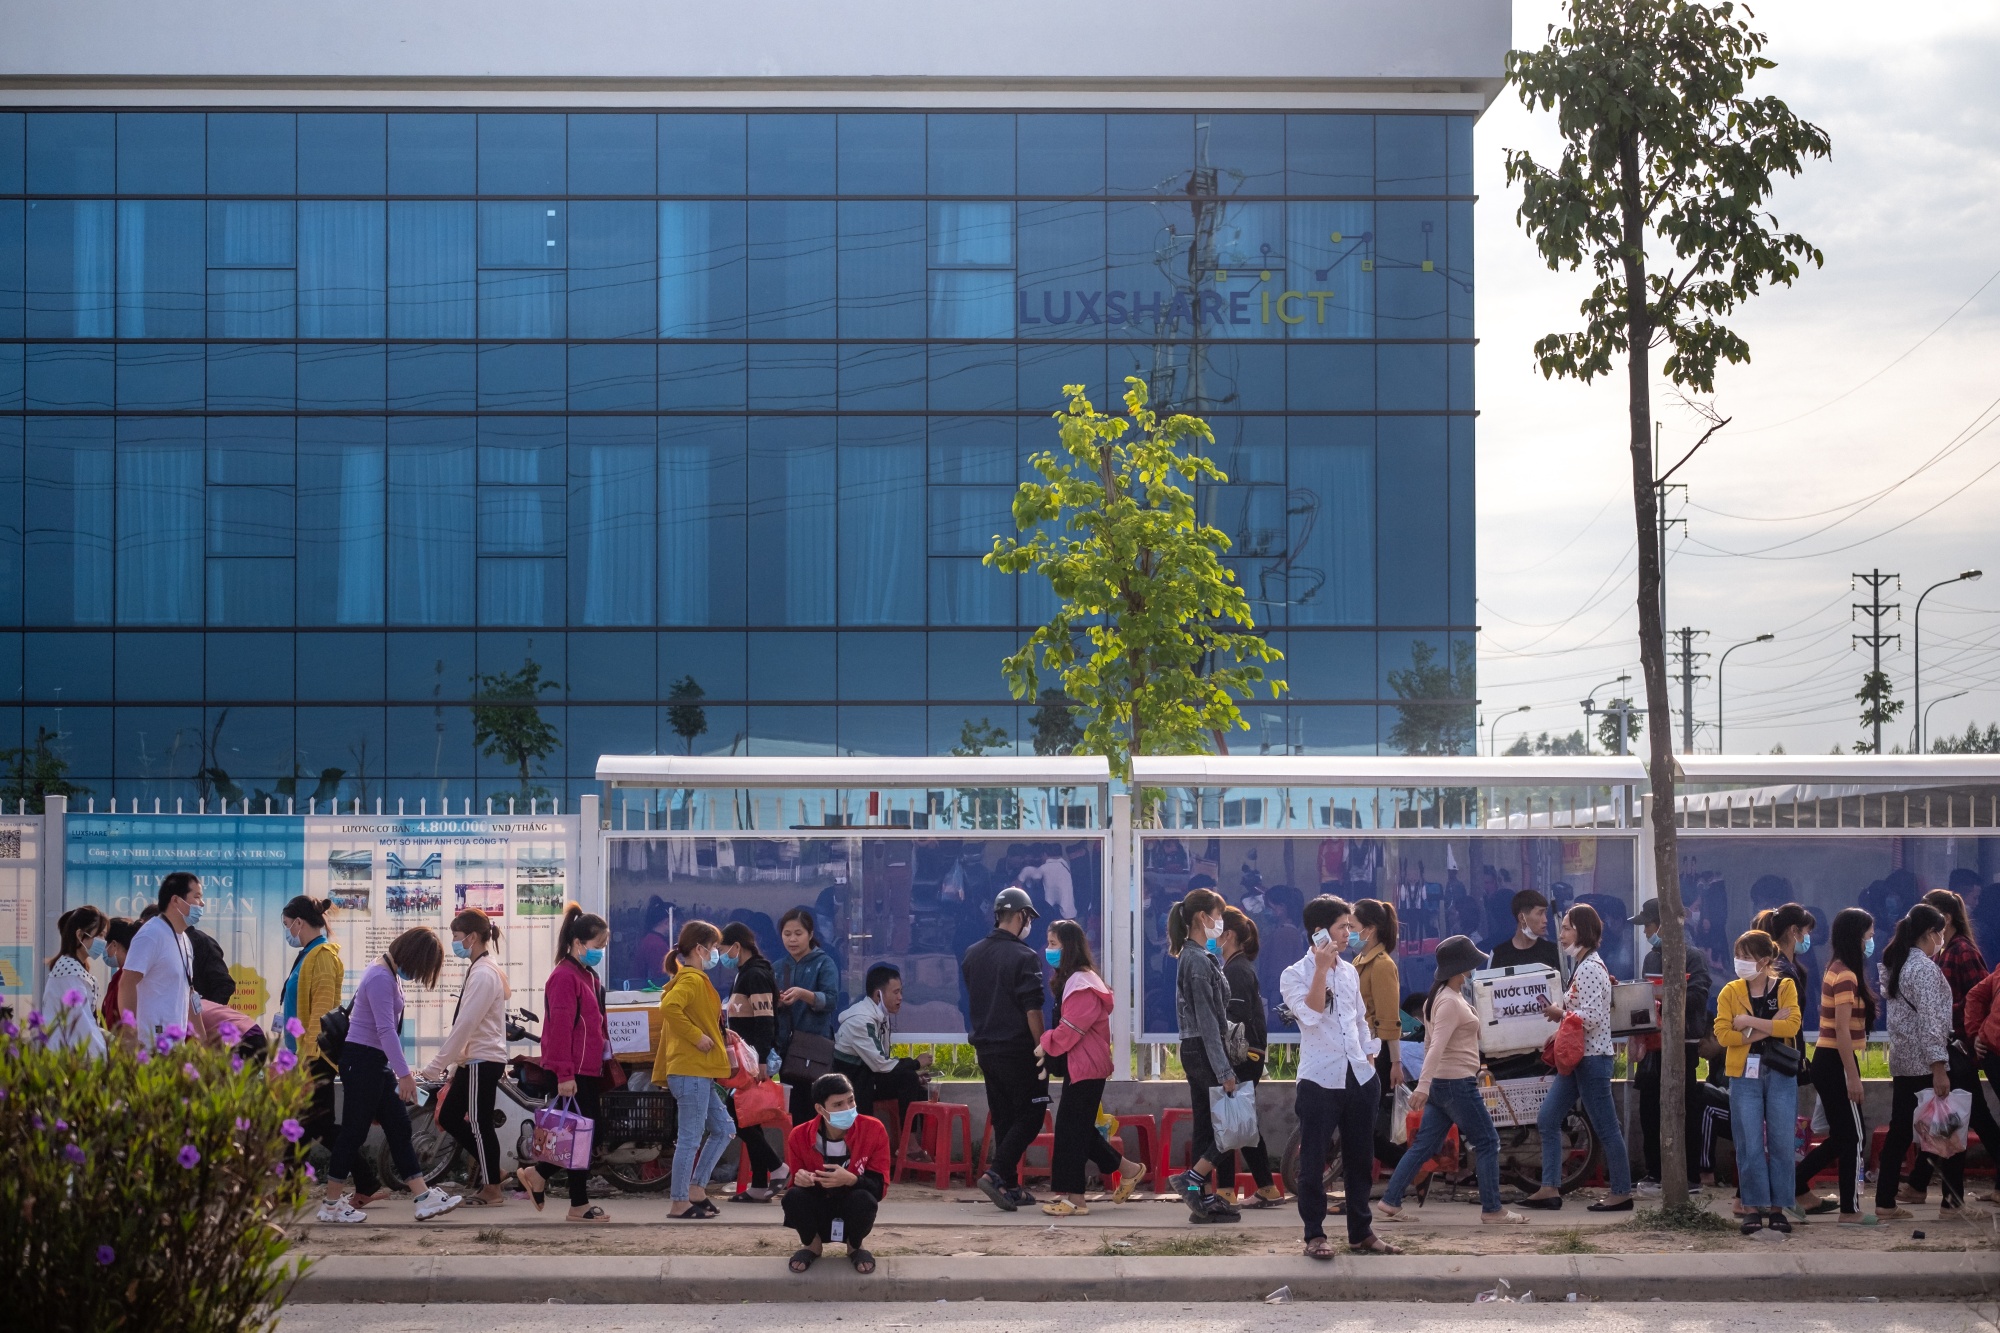  Công nhân trên đường tới nhà máy Luxshare ICT Bắc Giang.(Nguồn: Bloomberg)